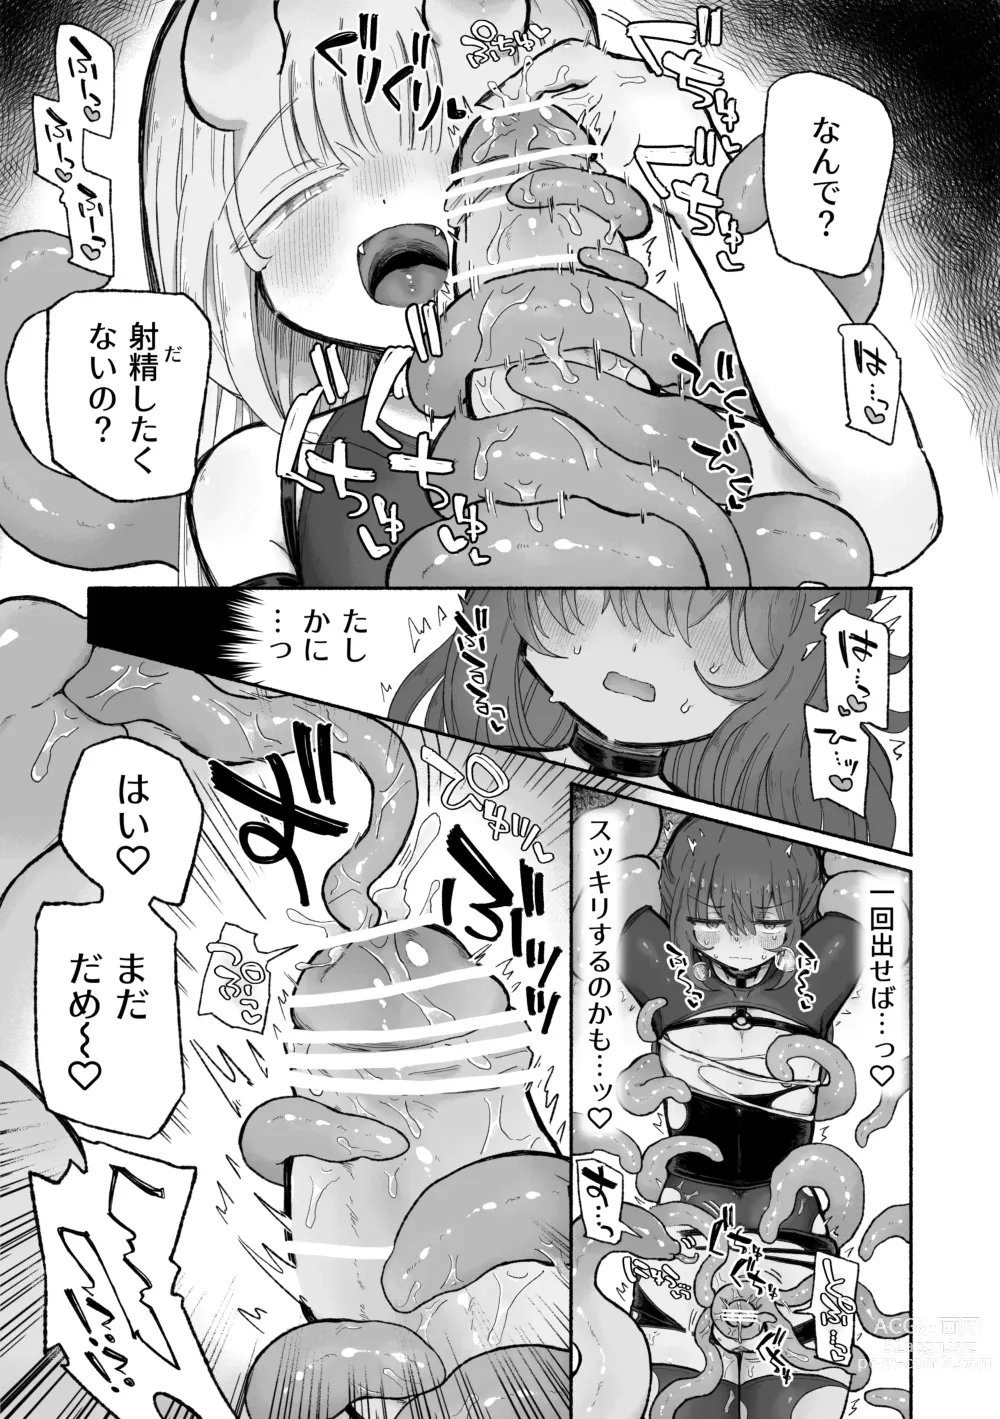 Page 11 of doujinshi Do hamari chui no kyosei danjon! 〜Mugen shasei no kairaku jigoku e yokoso〜